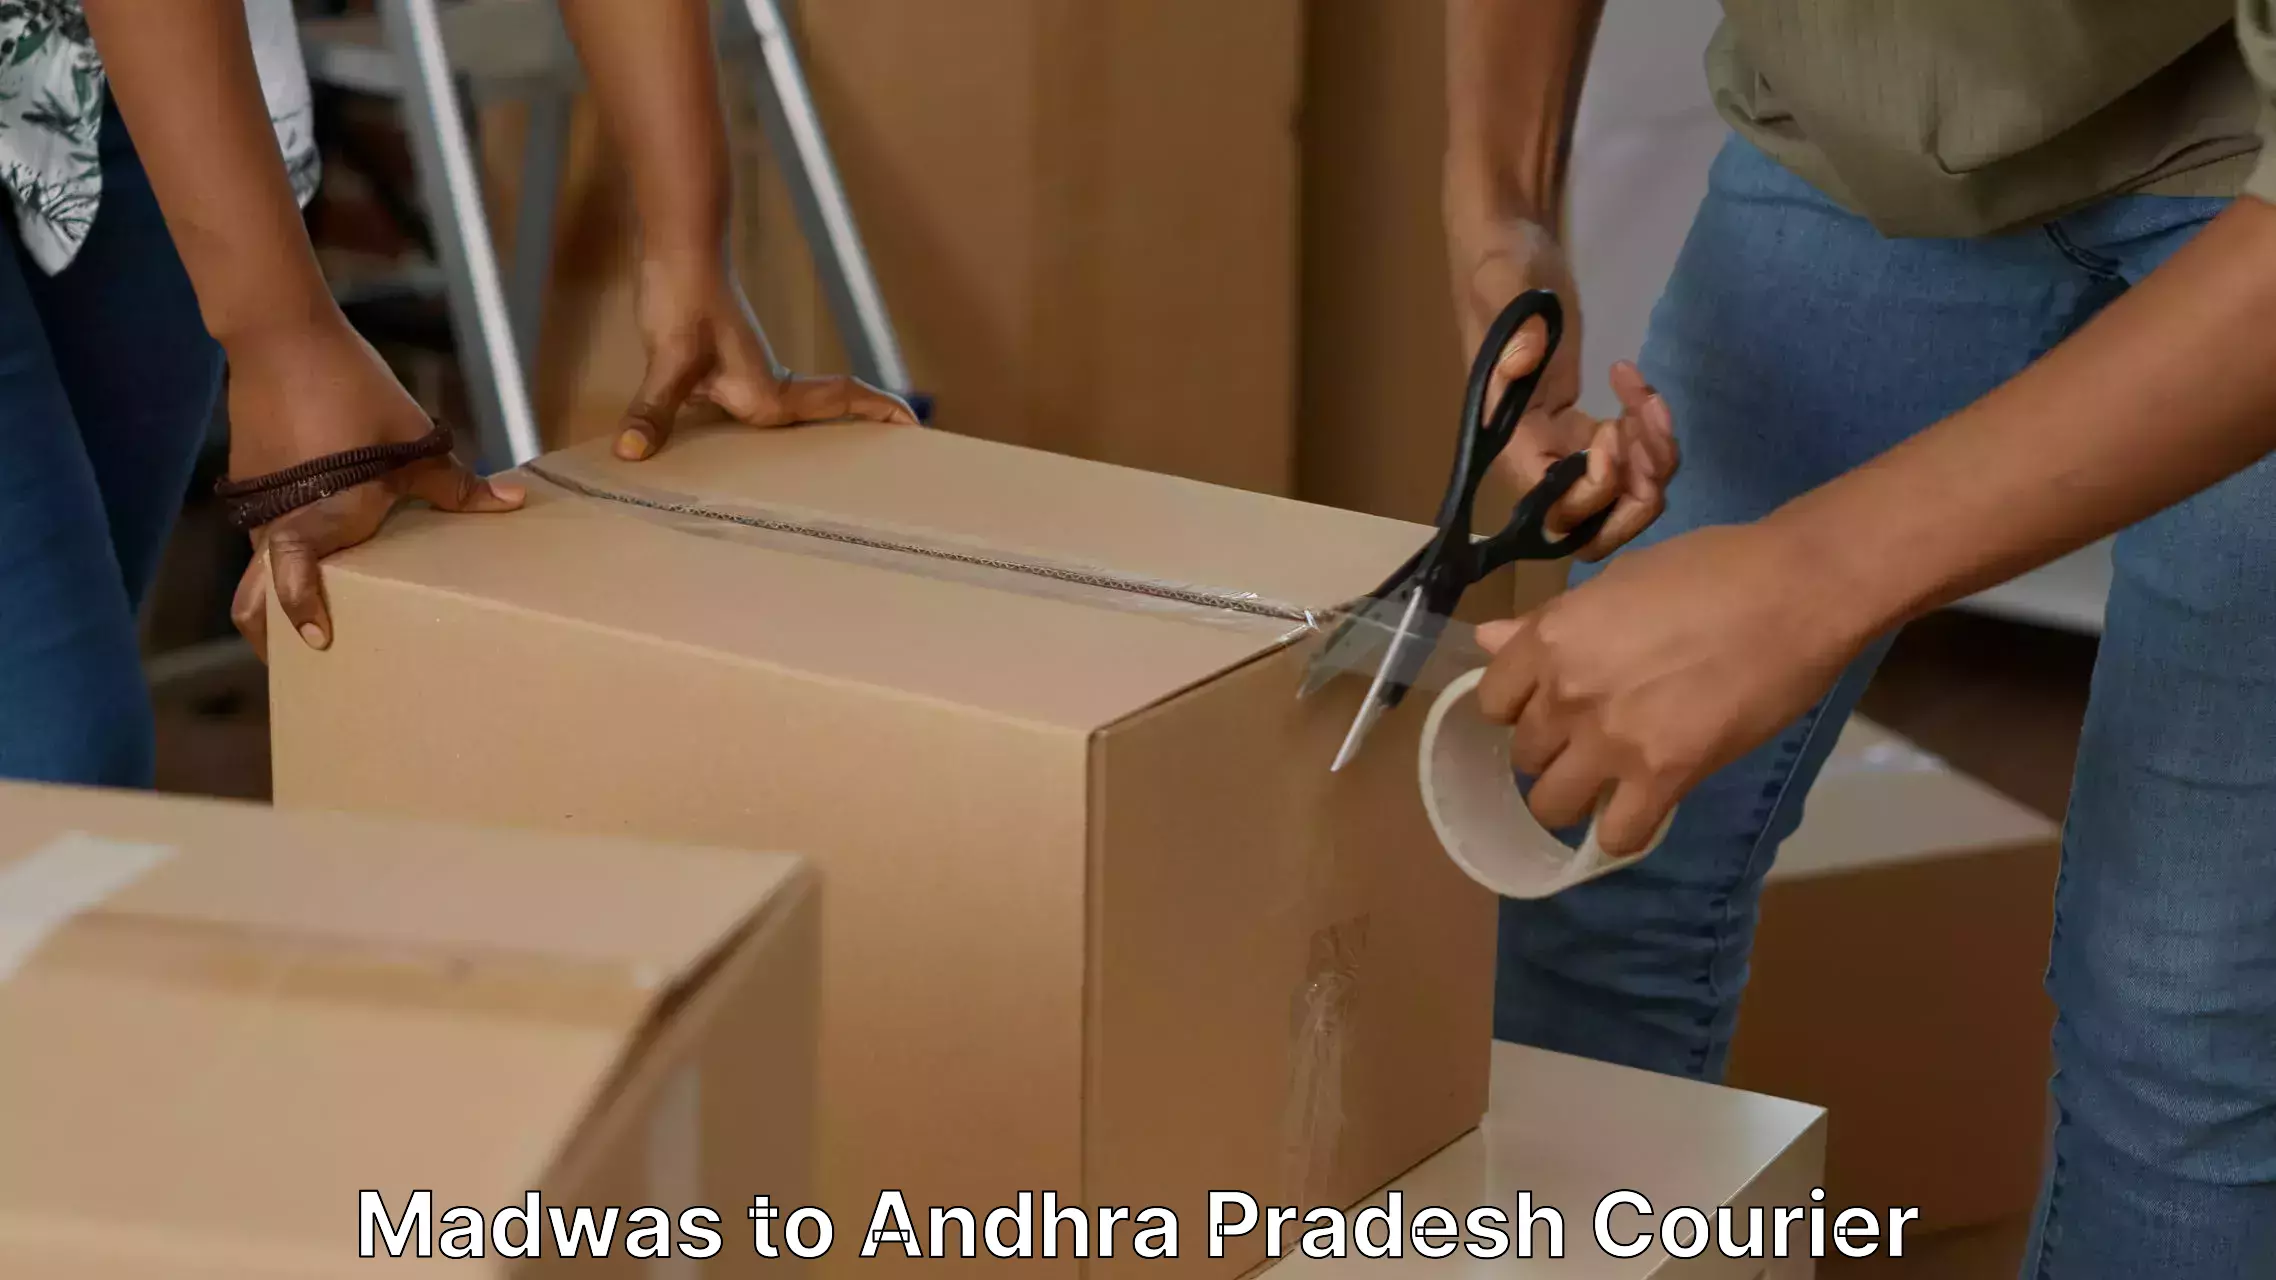 Furniture moving experts Madwas to Konthamuru